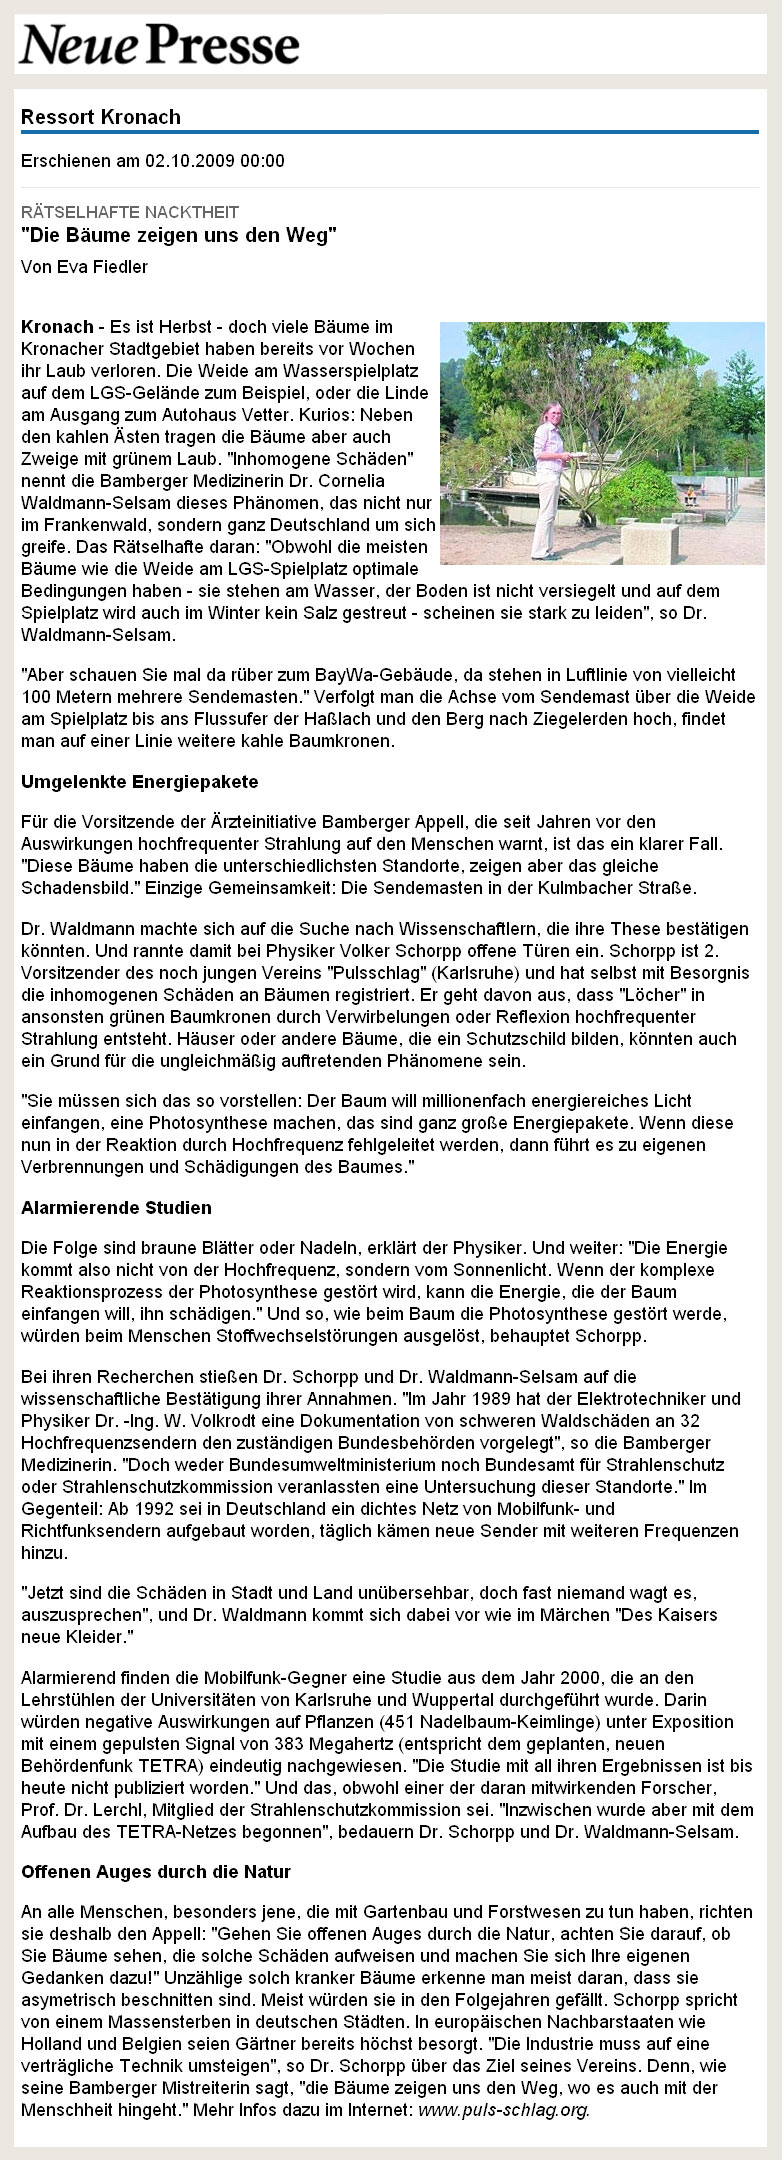 Neue Presse Kronach - 02.10.2009